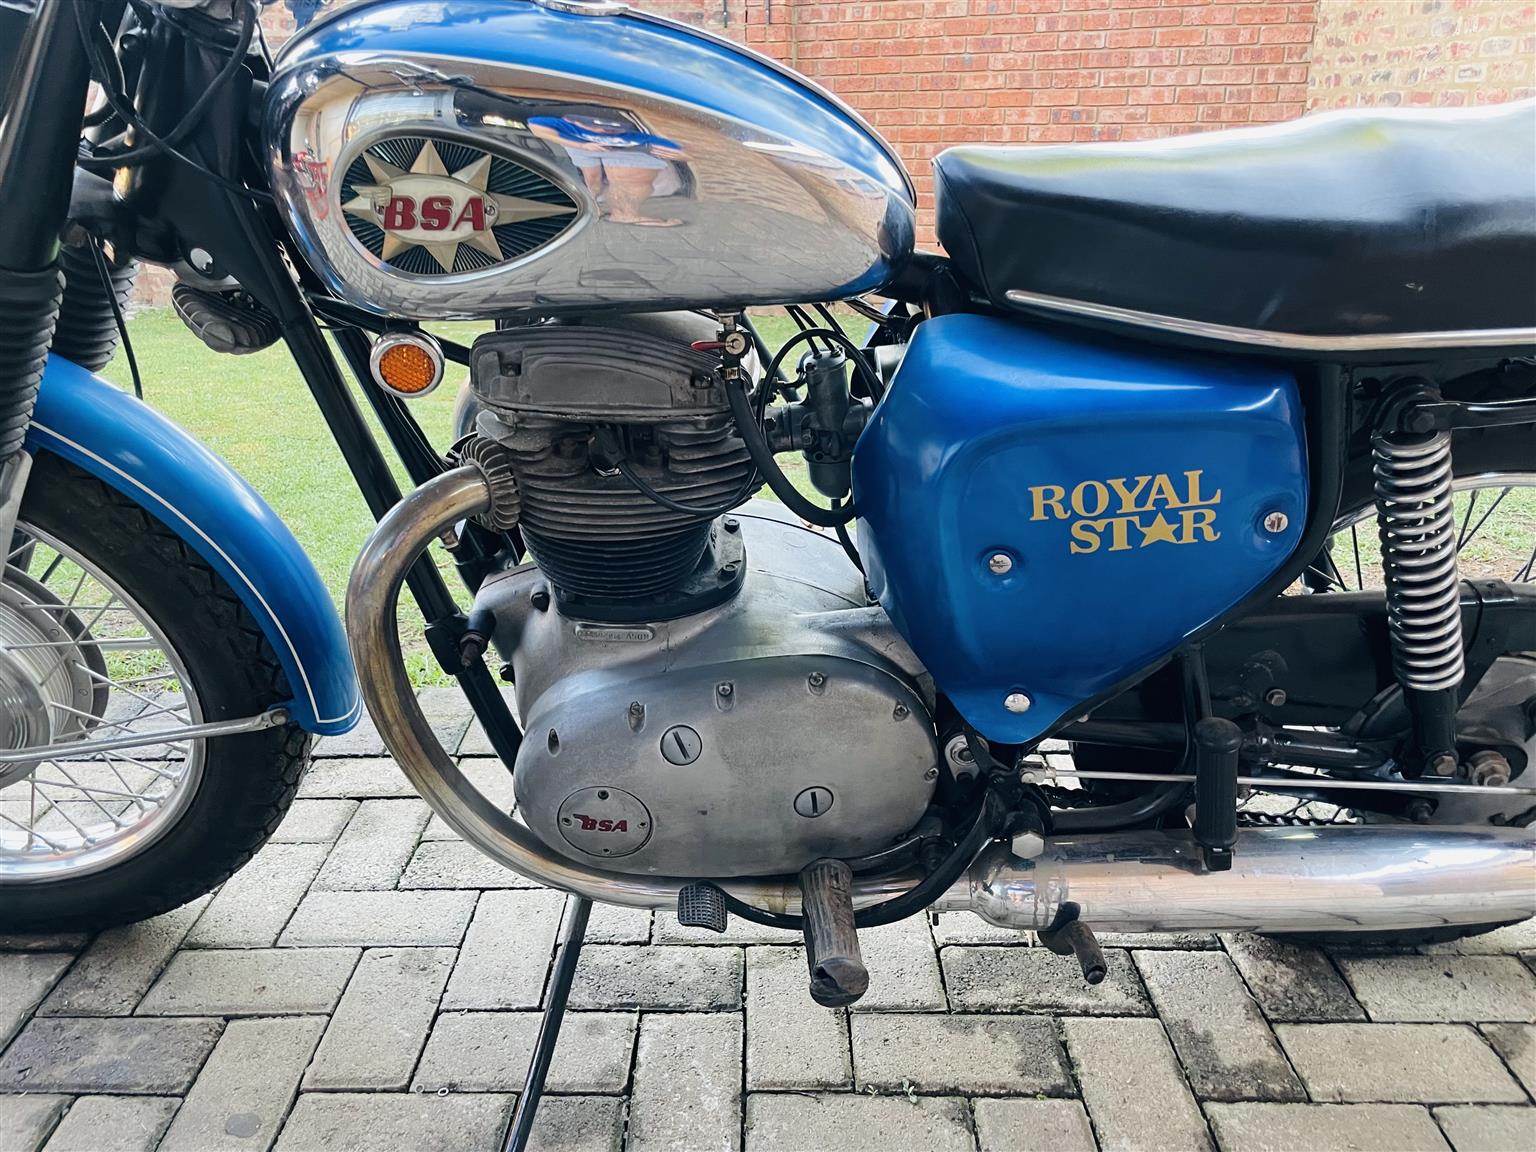 Motorcycle Bsa 1966 royal star 500cc 